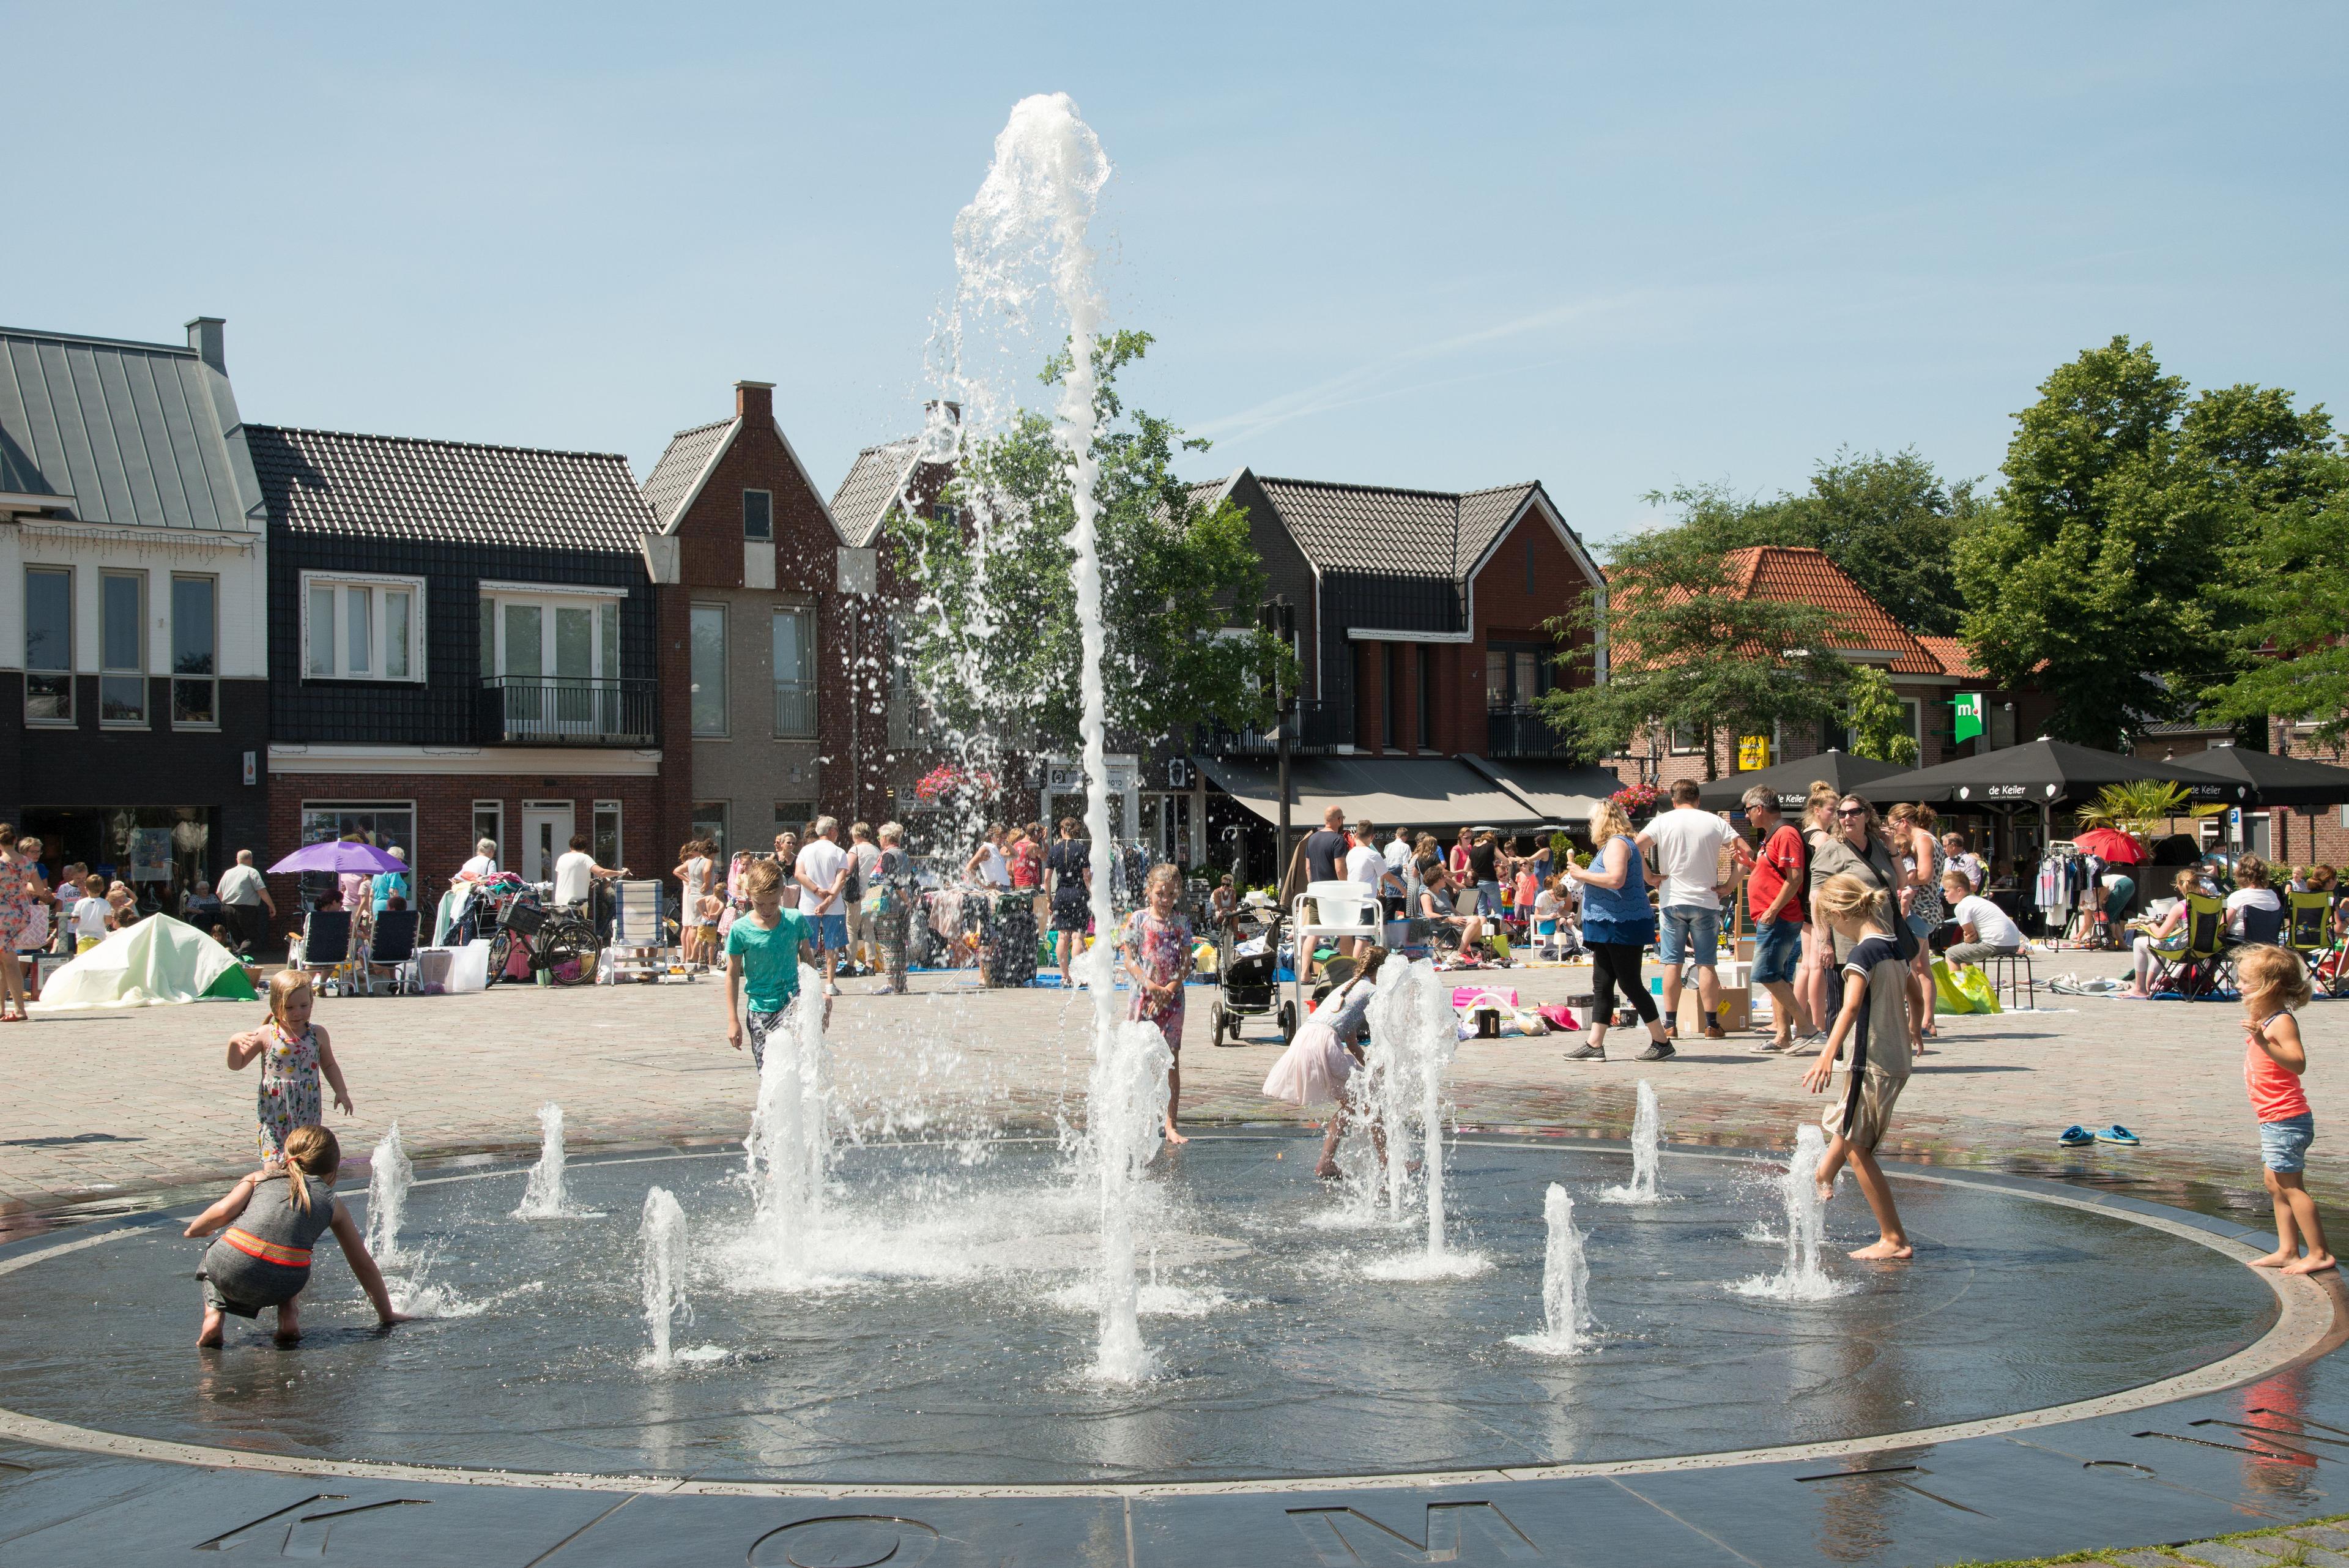 Marktplein Nunspeet met fontein en spelende kinderen